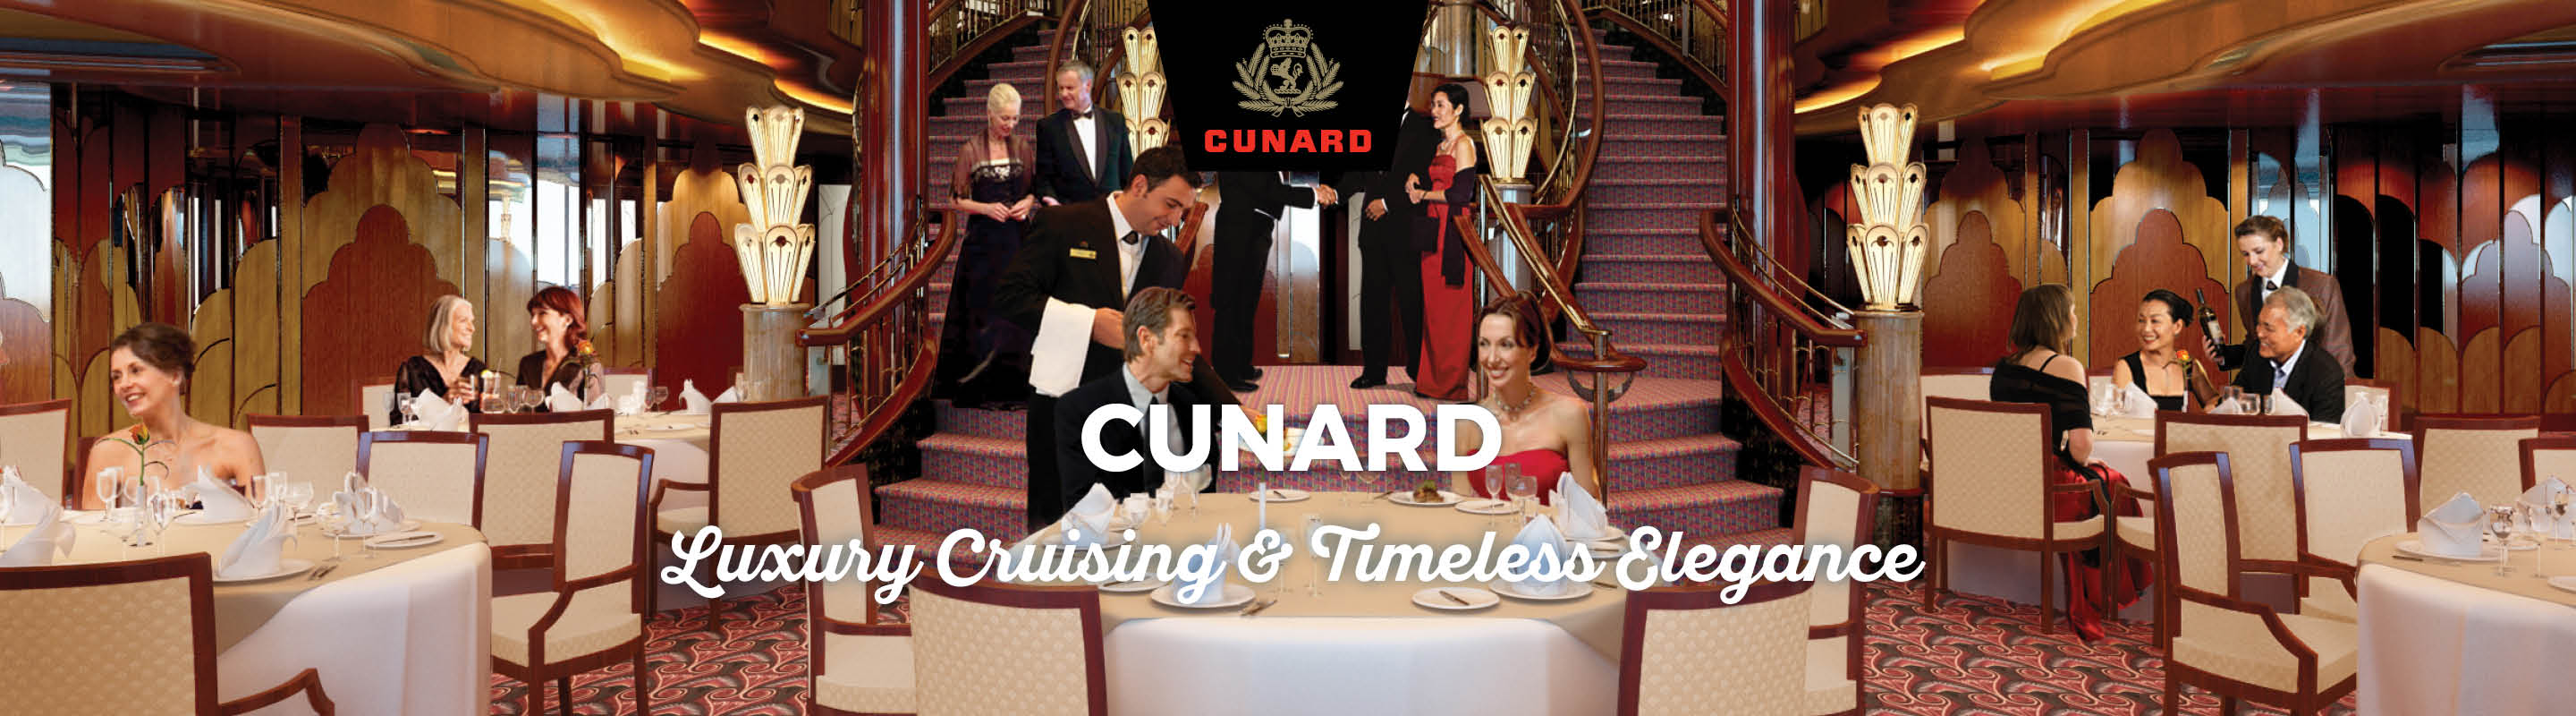 cunard-cruise-offers.jpg (1)